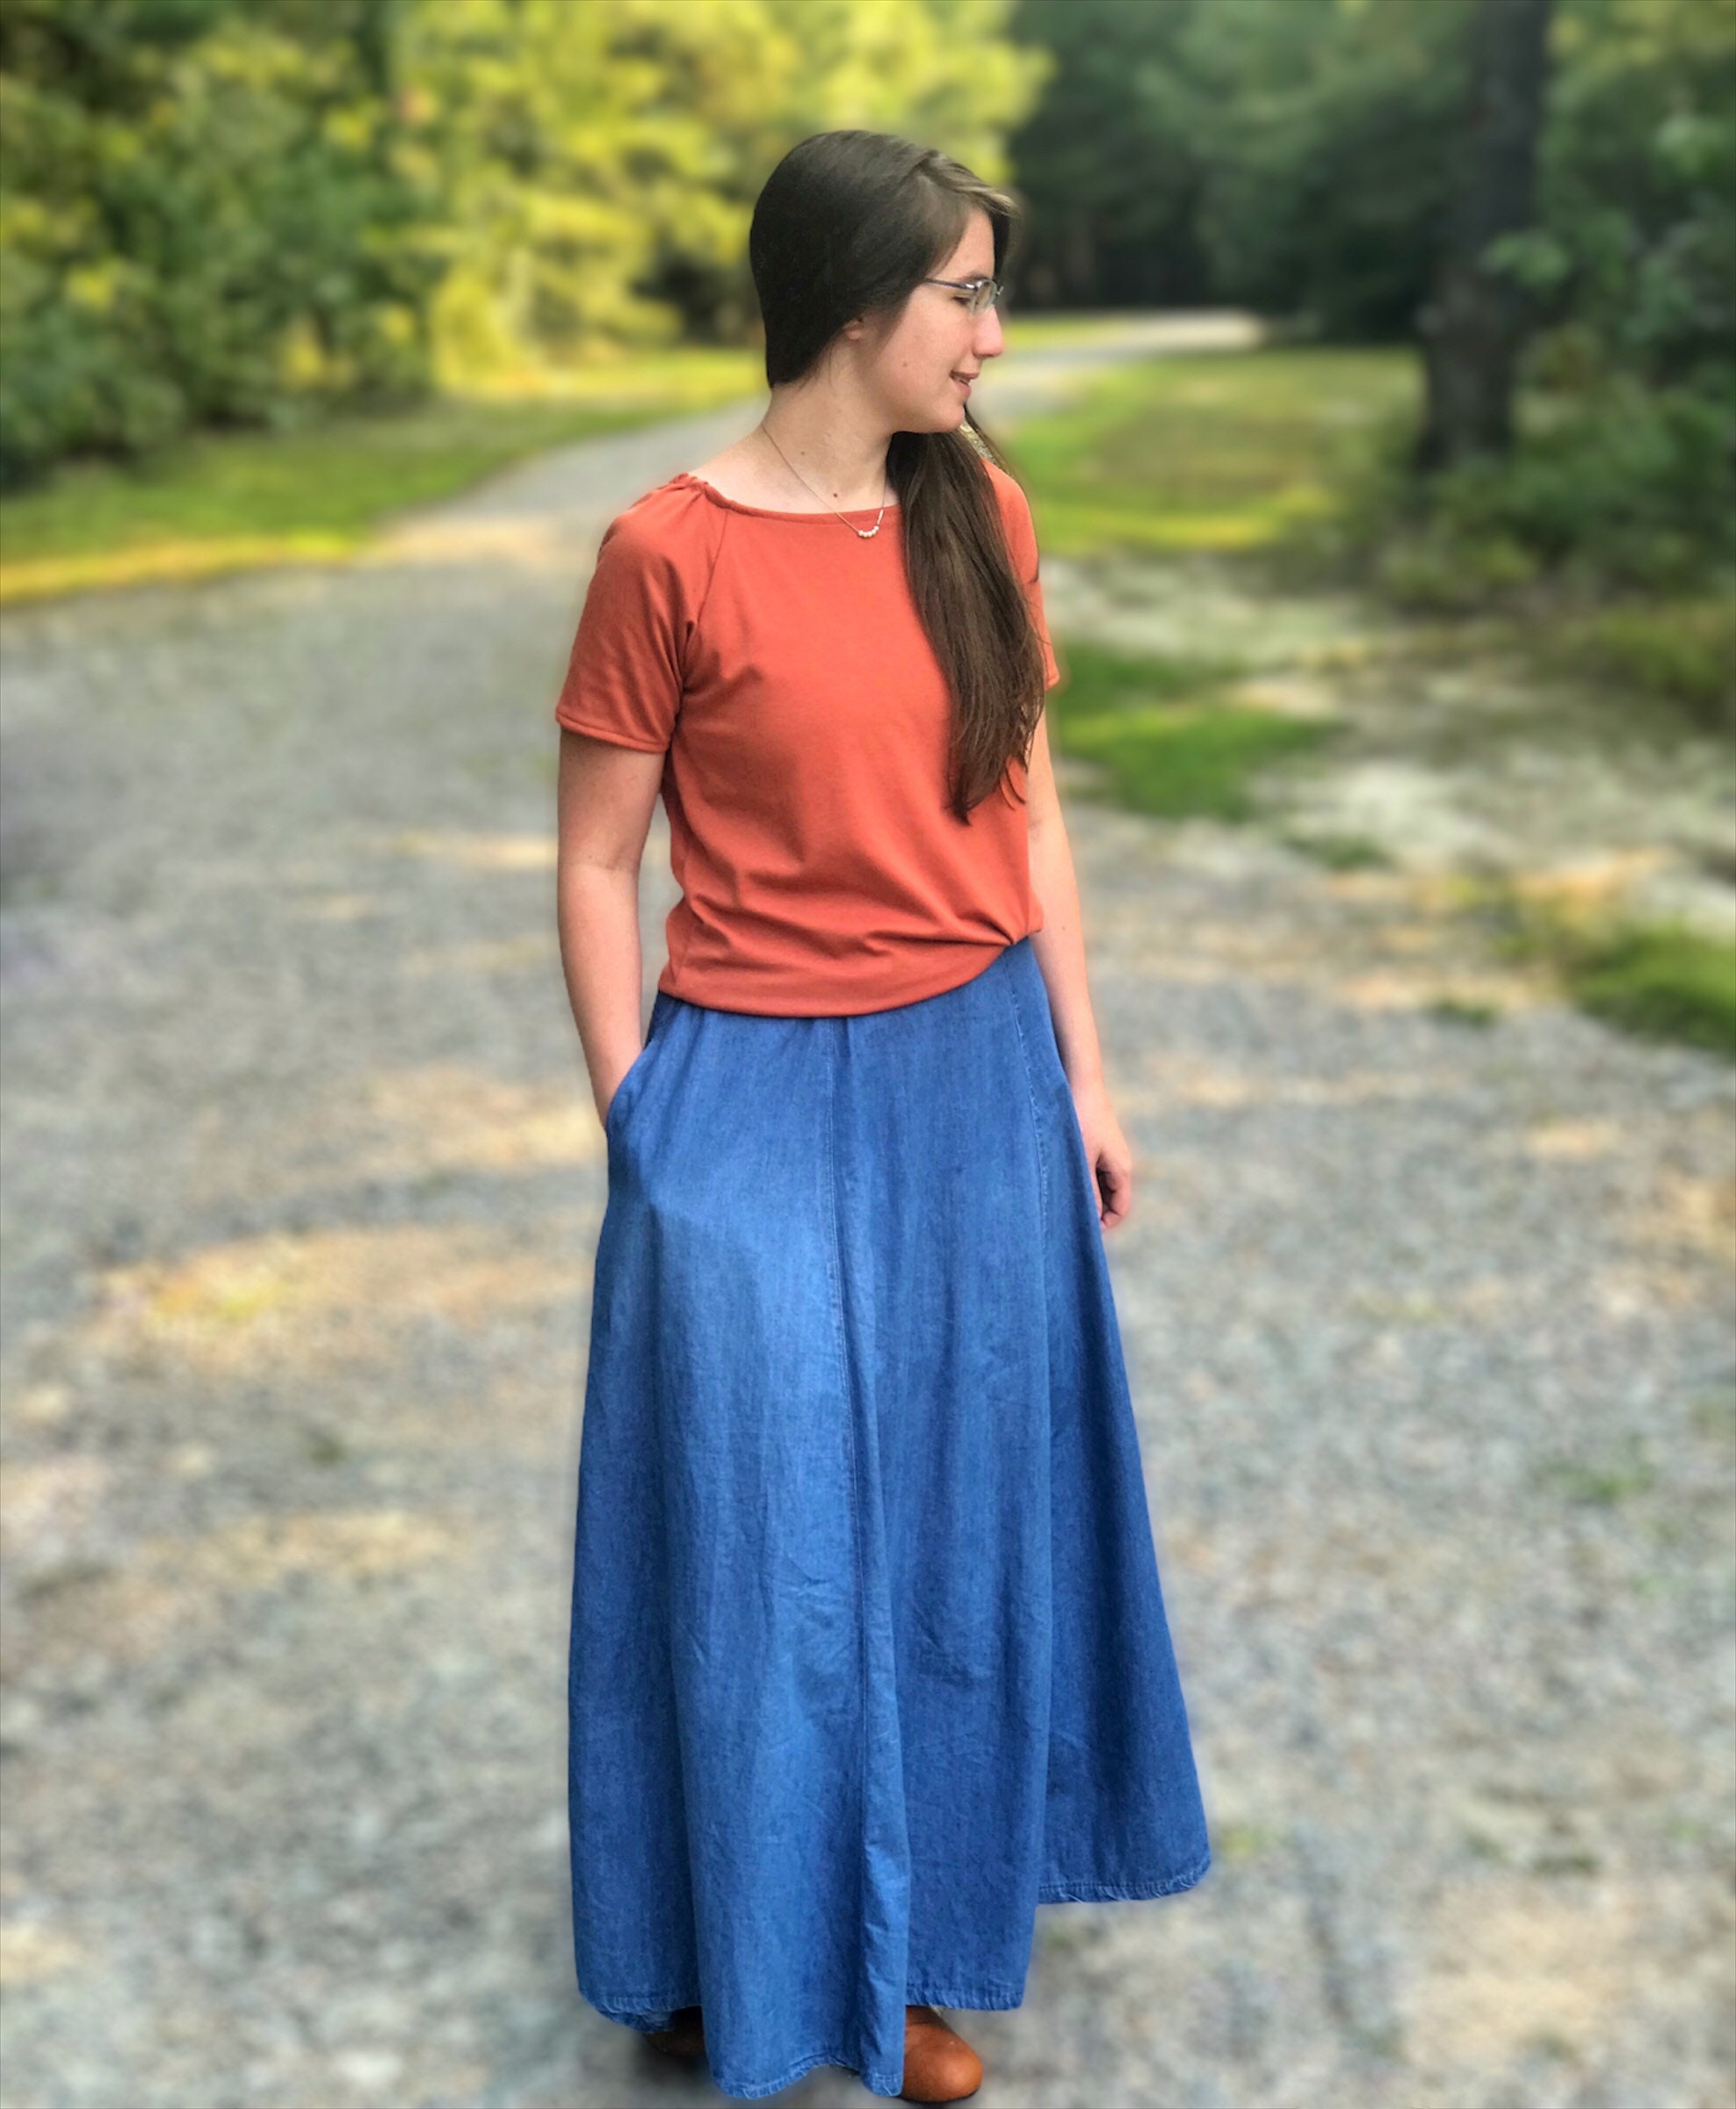 Modest Long Denim Skirt for Women Denim Maxi Skirt With - Etsy UK